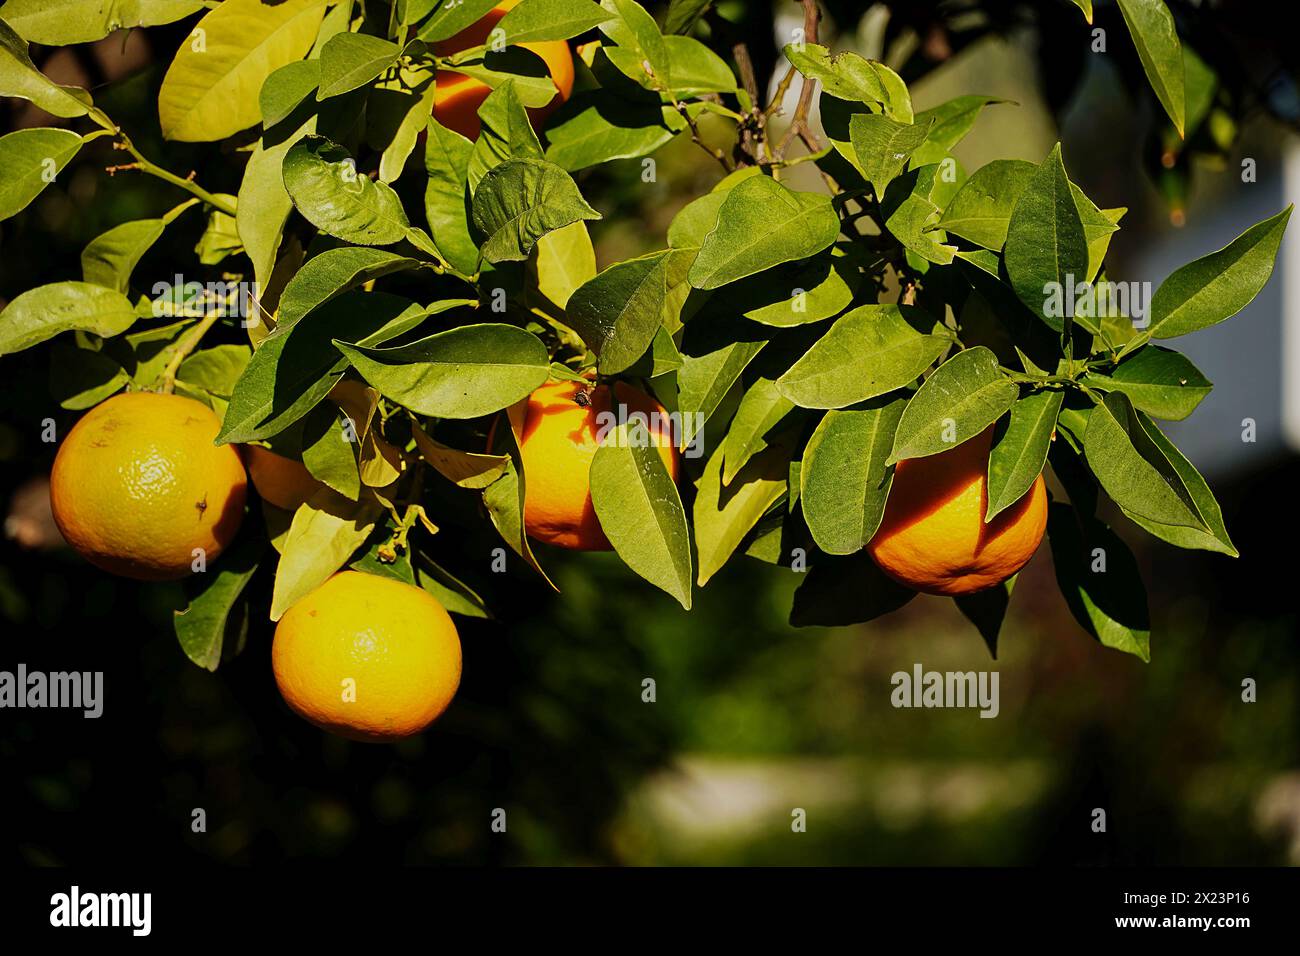 Bitter oranges or Citrus aurantium fruit on tree Stock Photo